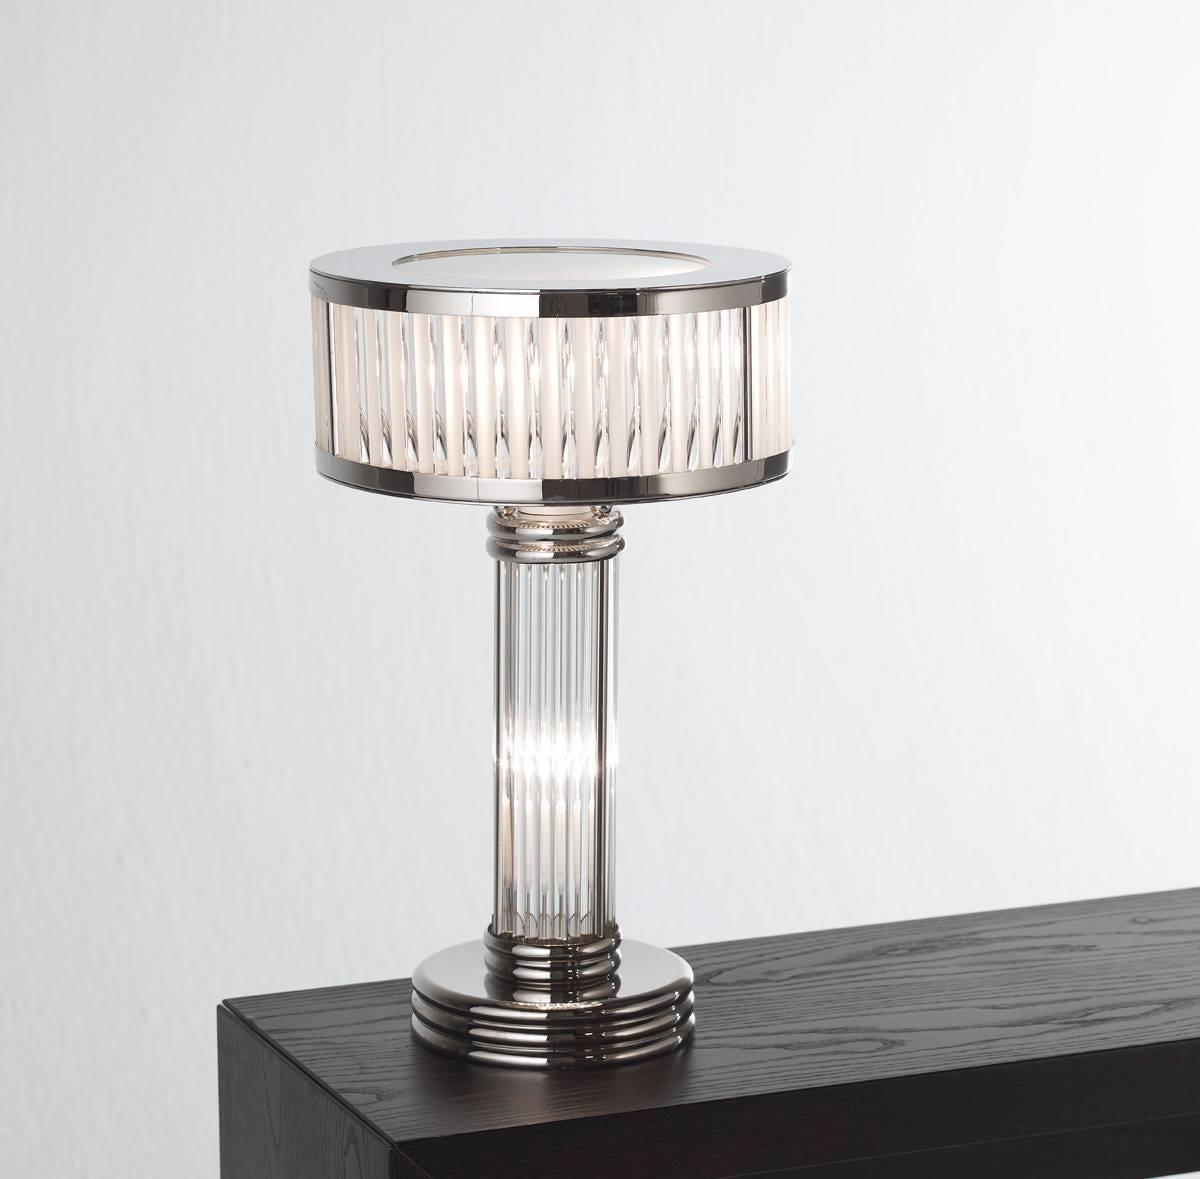 Lampe de table Art déco avec finition en nickel et tiges de verre.